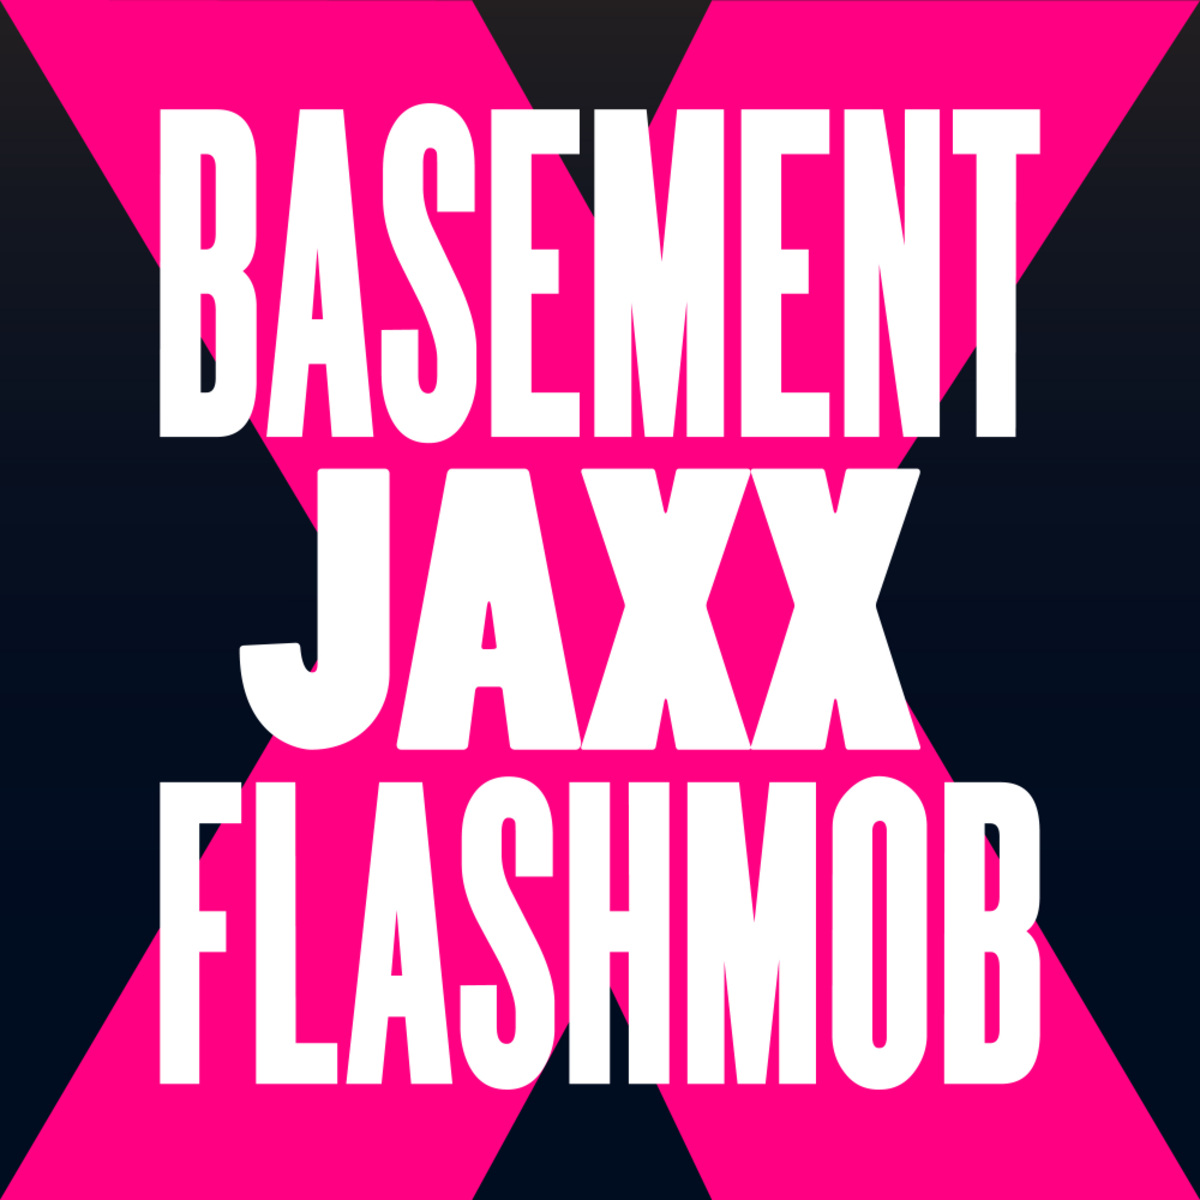 Basement Jaxx - Fly Life (Flashmob Remix) / Glasgow Underground